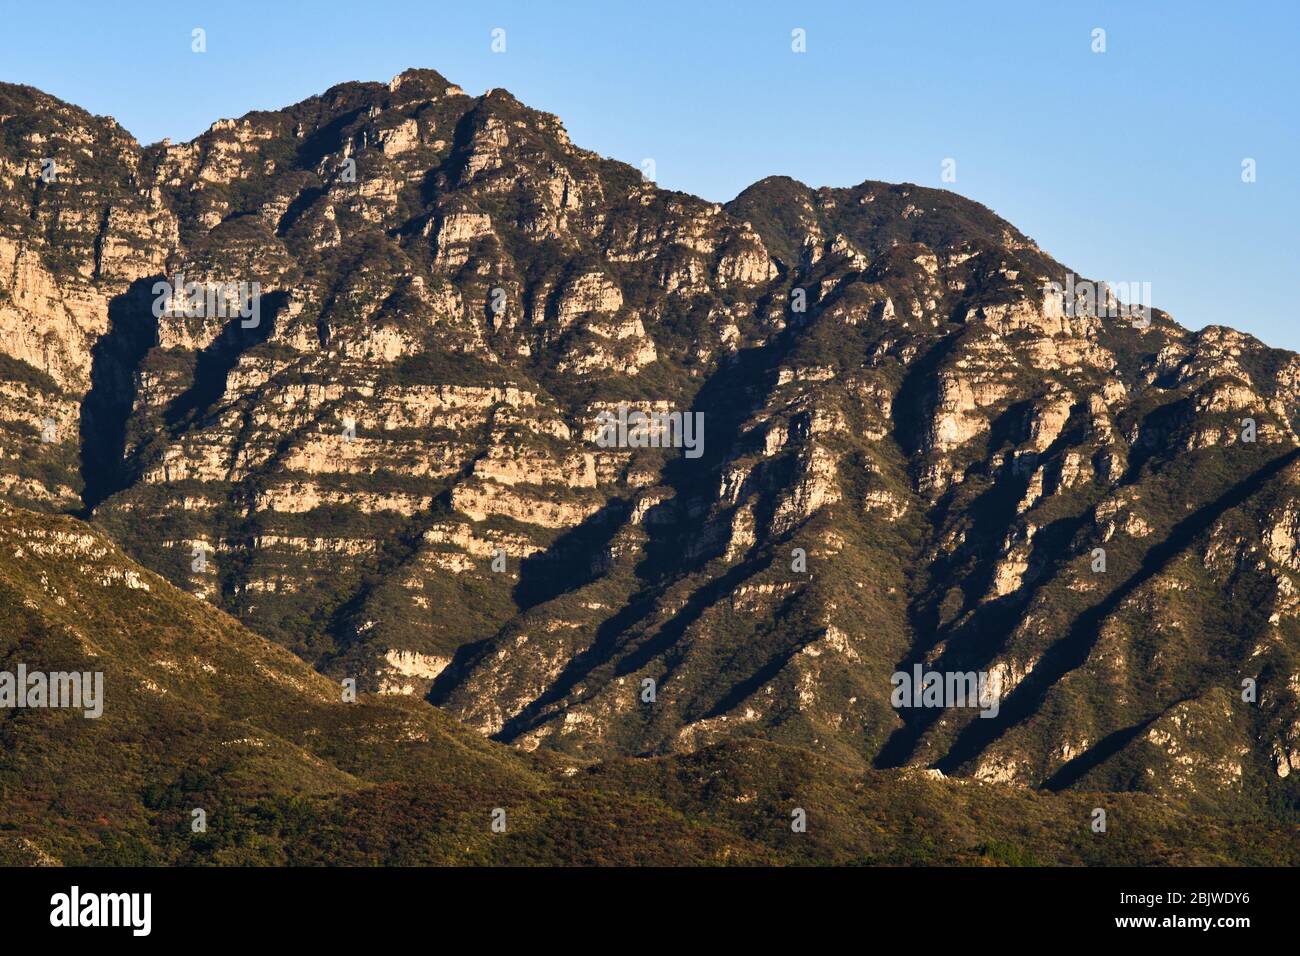 Montagnes du Juyongguan (col de Juyong) dans le district de Changping, à environ 50 kilomètres au nord de Pékin, Chine, où passe la Grande Muraille de Chine Banque D'Images